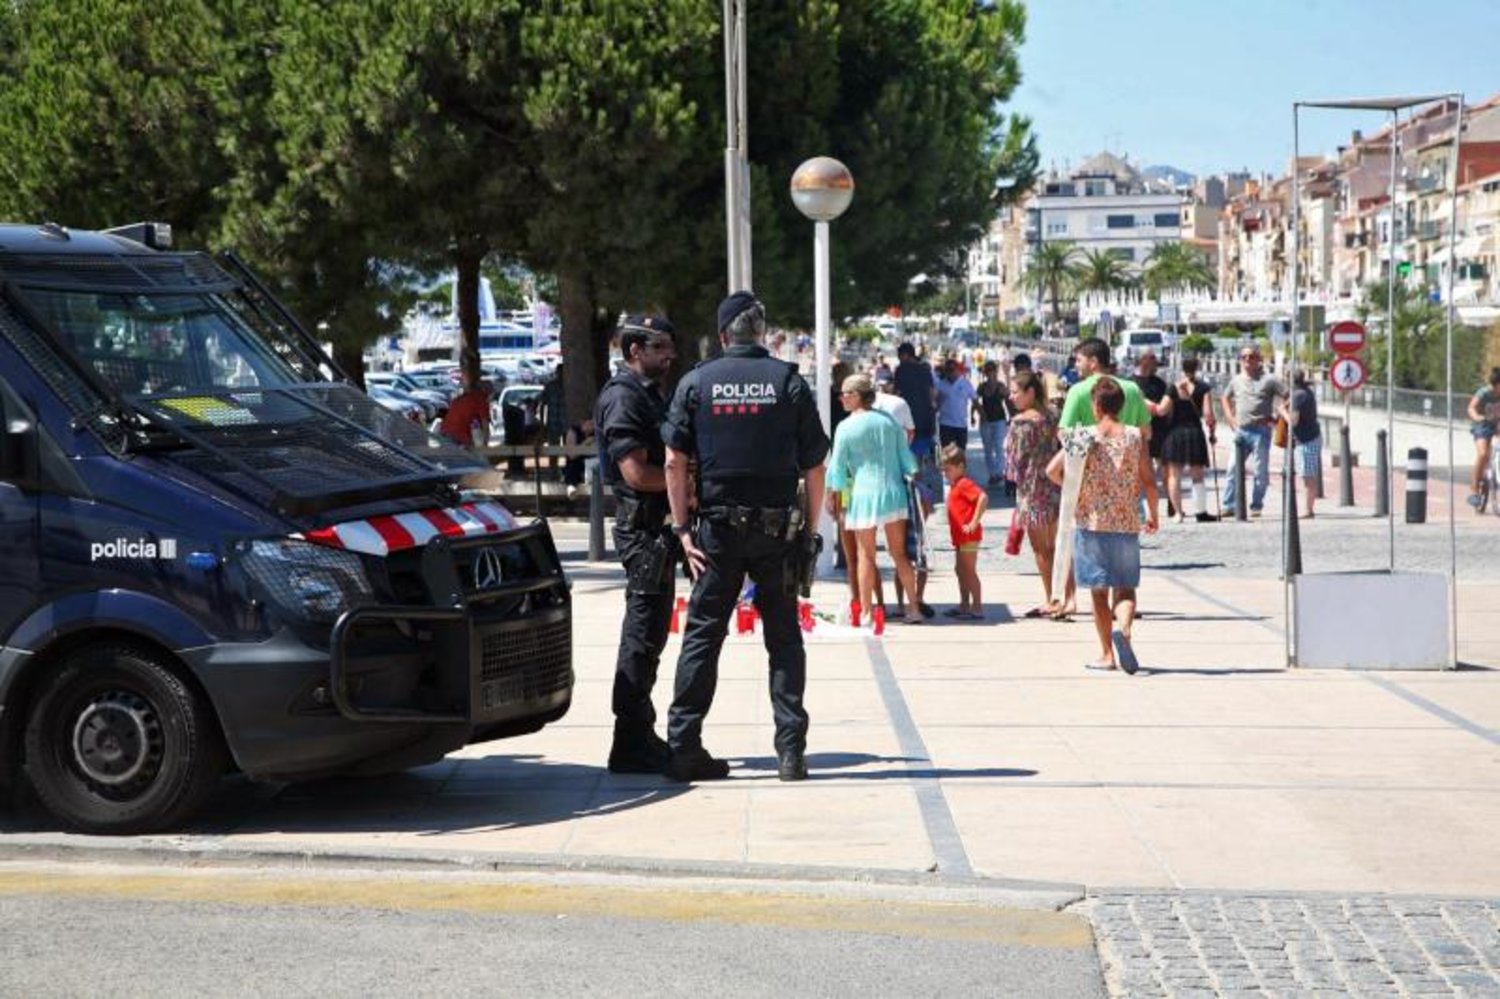 عناصر من شرطة كتالونيا في كامبريلس حيث وقع اعتداء آخر بالدهس بعد ساعات من هجوم برشلونة (إ.ب.أ)